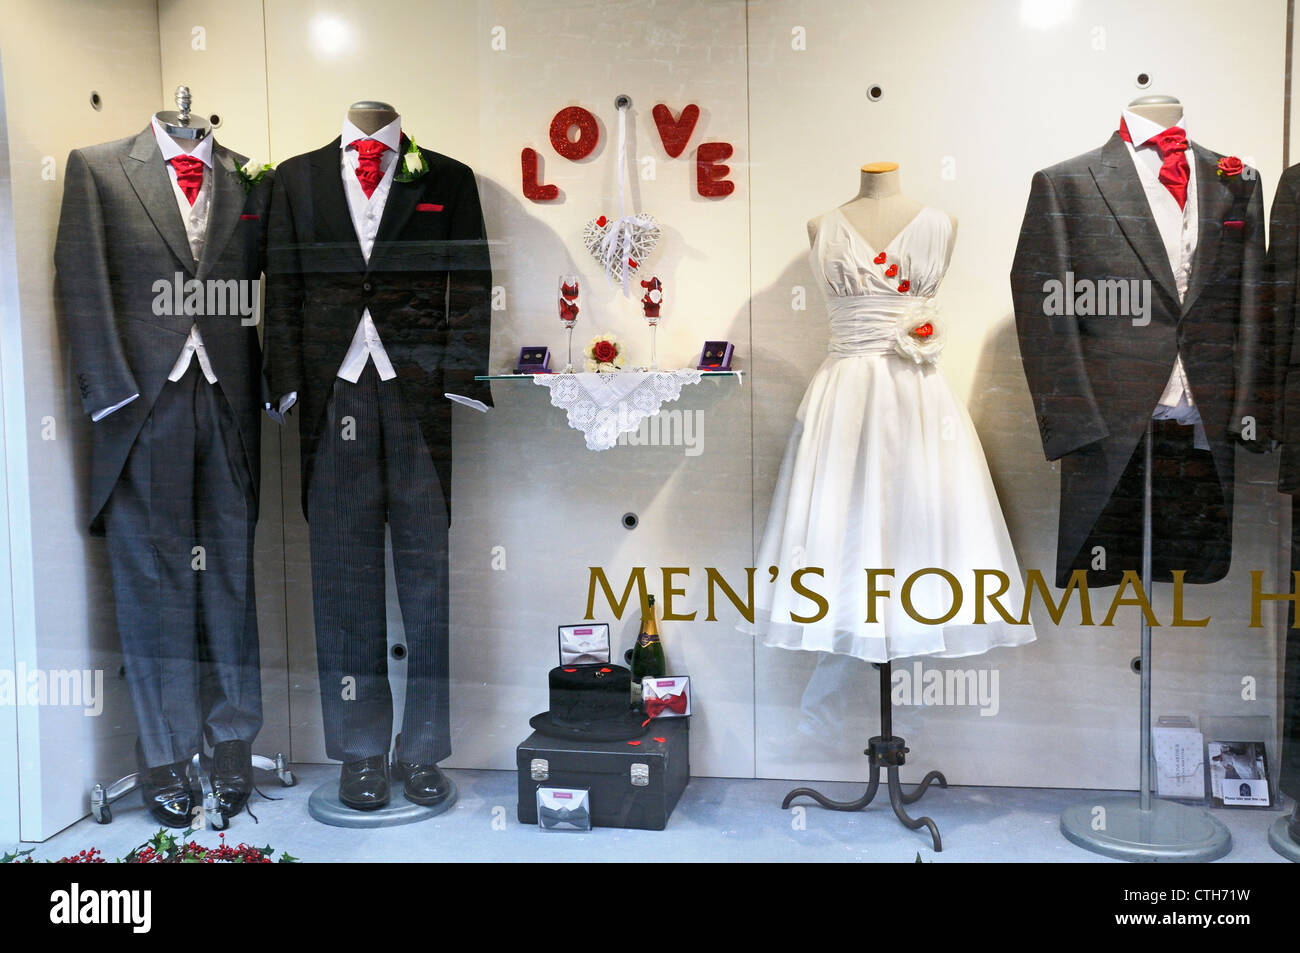 Los hombres de traje formal de visualización de ventana de alquiler Foto de stock